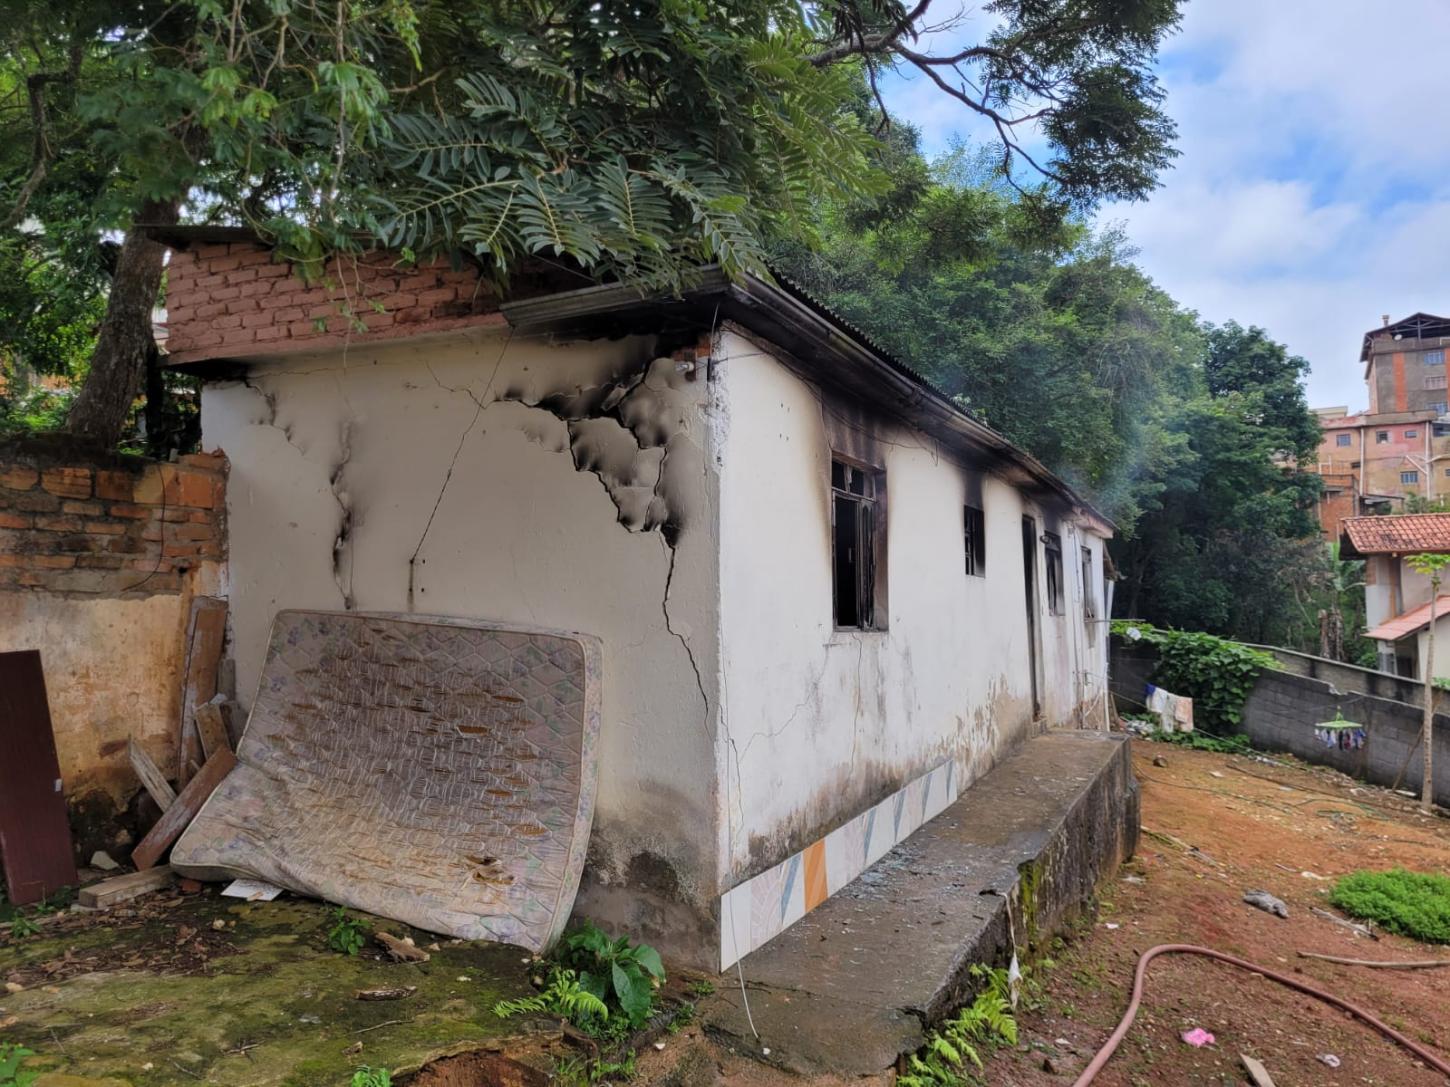 Bombeiros combatem incêndio em residência no bairro Boa Morte